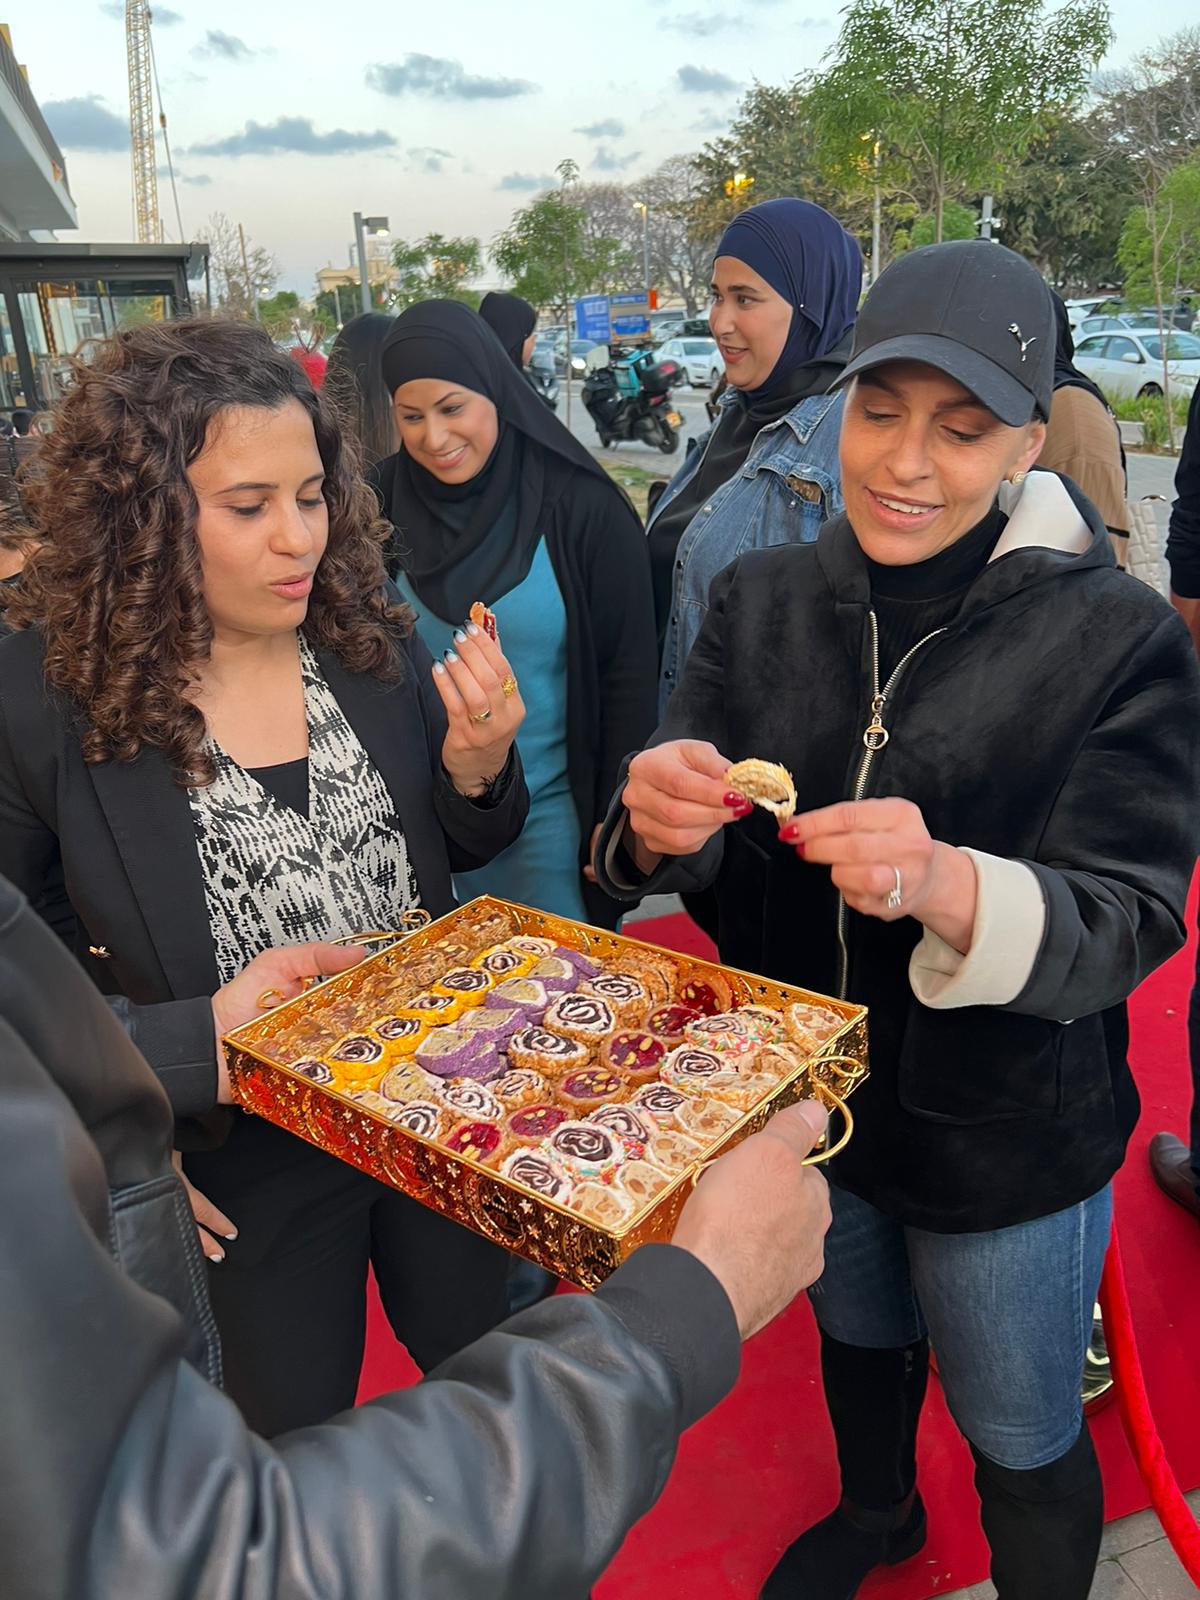  يافا: افتتاح الفرع الجديد لبيت الحلويات والشكولاتة - سويت رياليتي